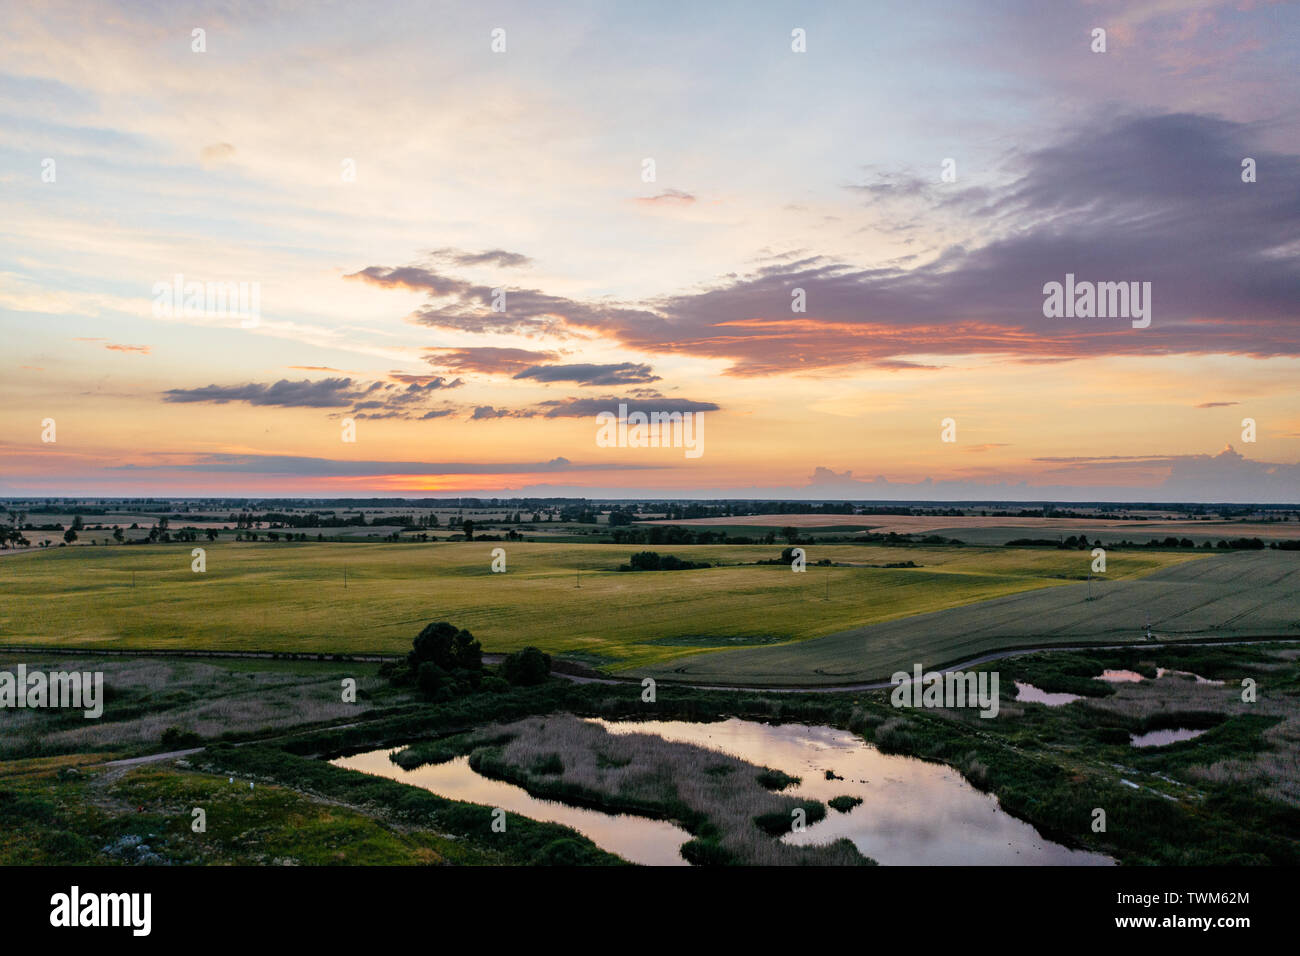 Am späten Abend Sonnenuntergang über dem See, flach - Länder von Polen. Stockfoto